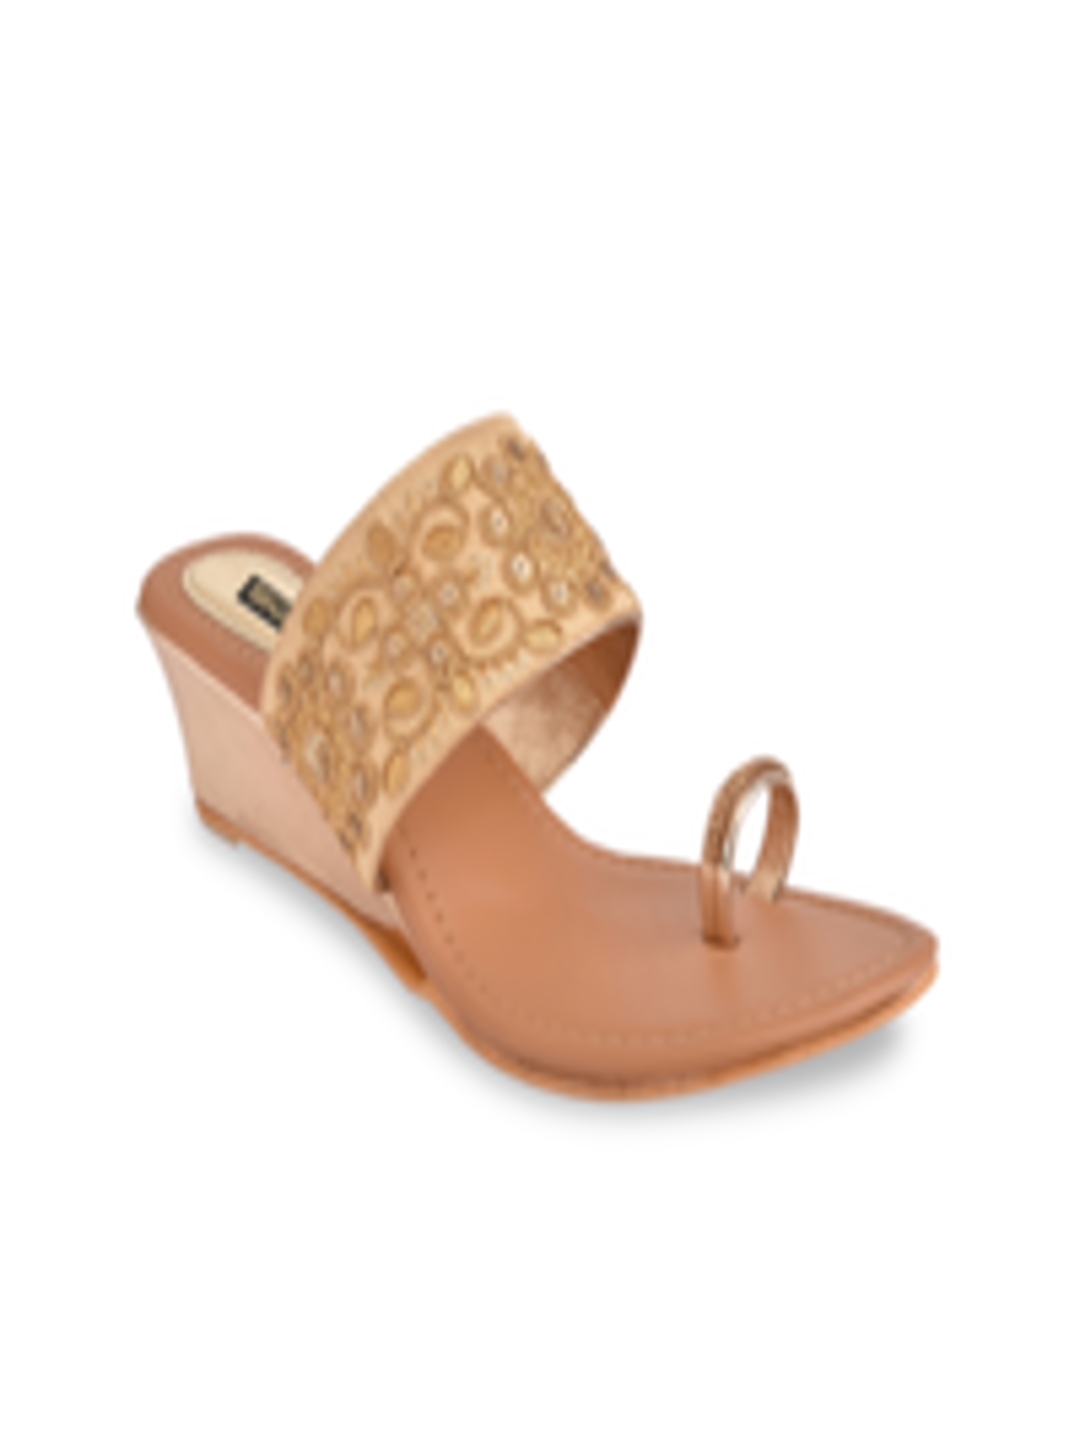 Buy Shoetopia Women Gold Toned Woven Design One Toed Sandals - Heels ...